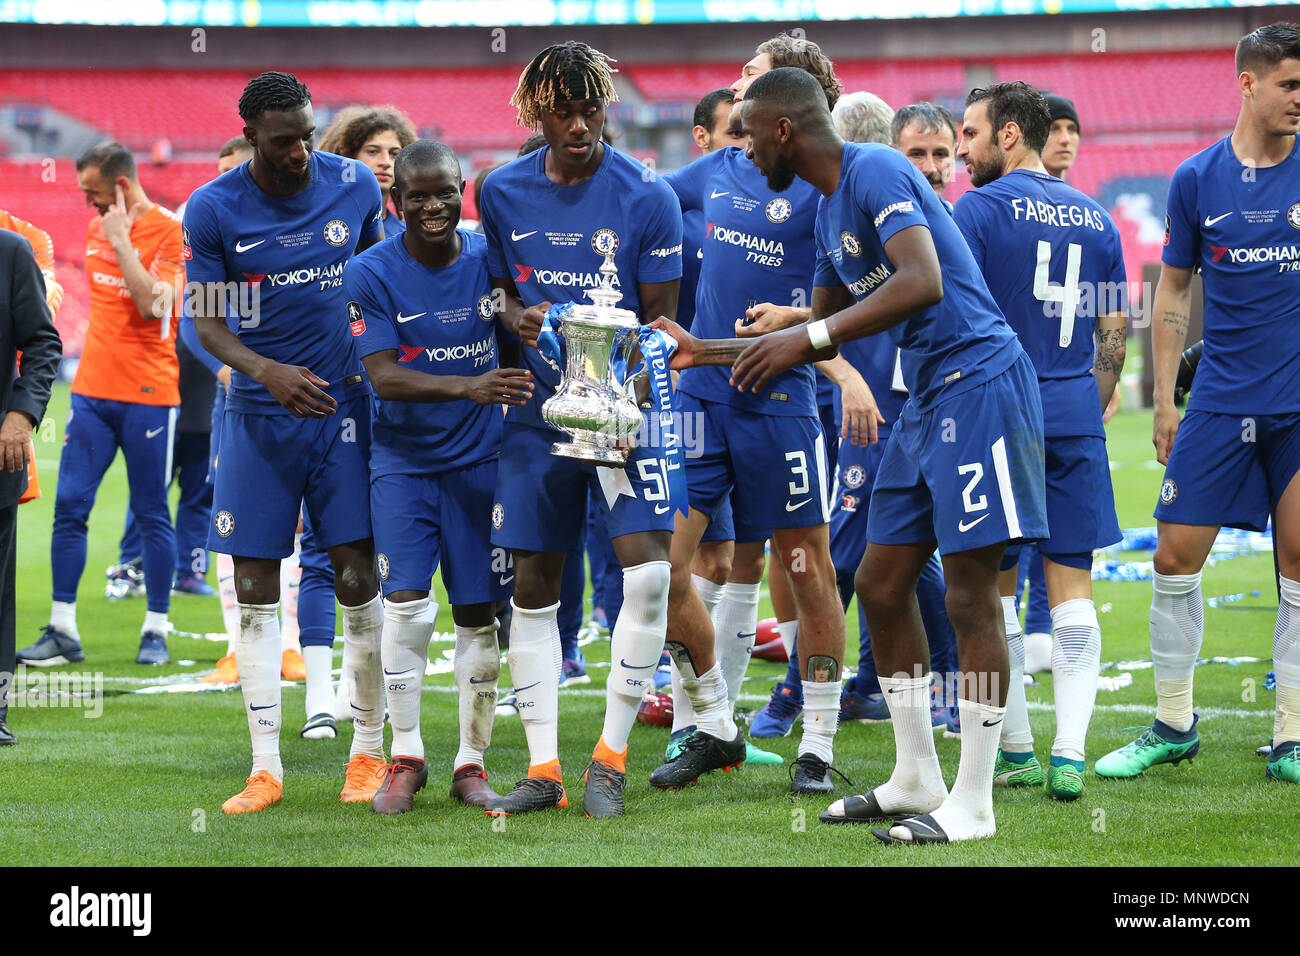 Trevoh Chalobah de Chelsea avec le trophée à la fin de la finale de la FA Cup match entre Chelsea et Manchester United au stade de Wembley, le 19 mai 2018 à Londres, en Angleterre. (Photo prise par Paul Chesterton/phcimages.com) Banque D'Images